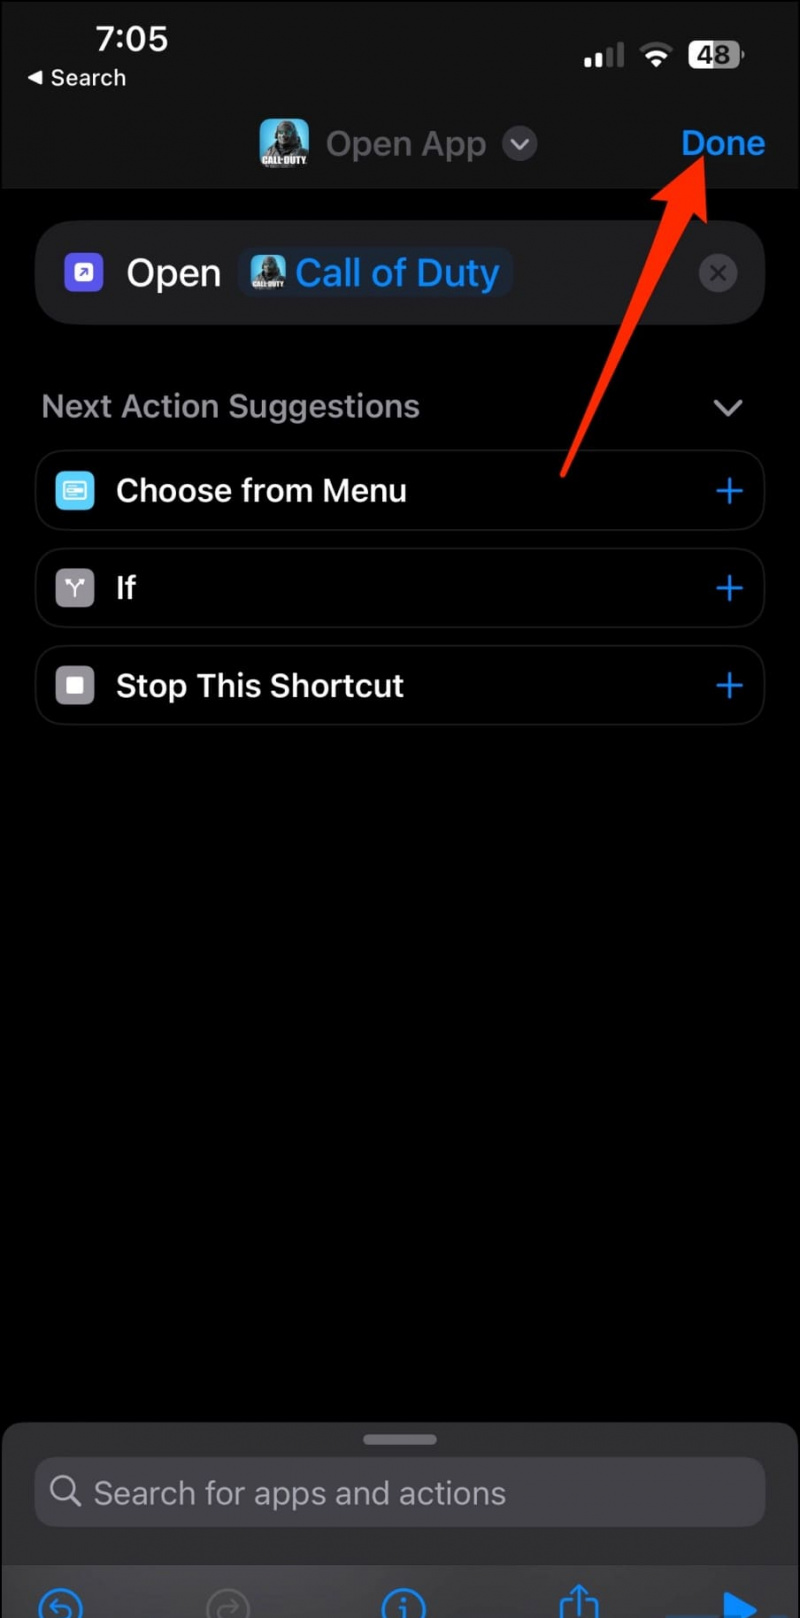   Travesti l'icona dell'app per iPhone da nascondere